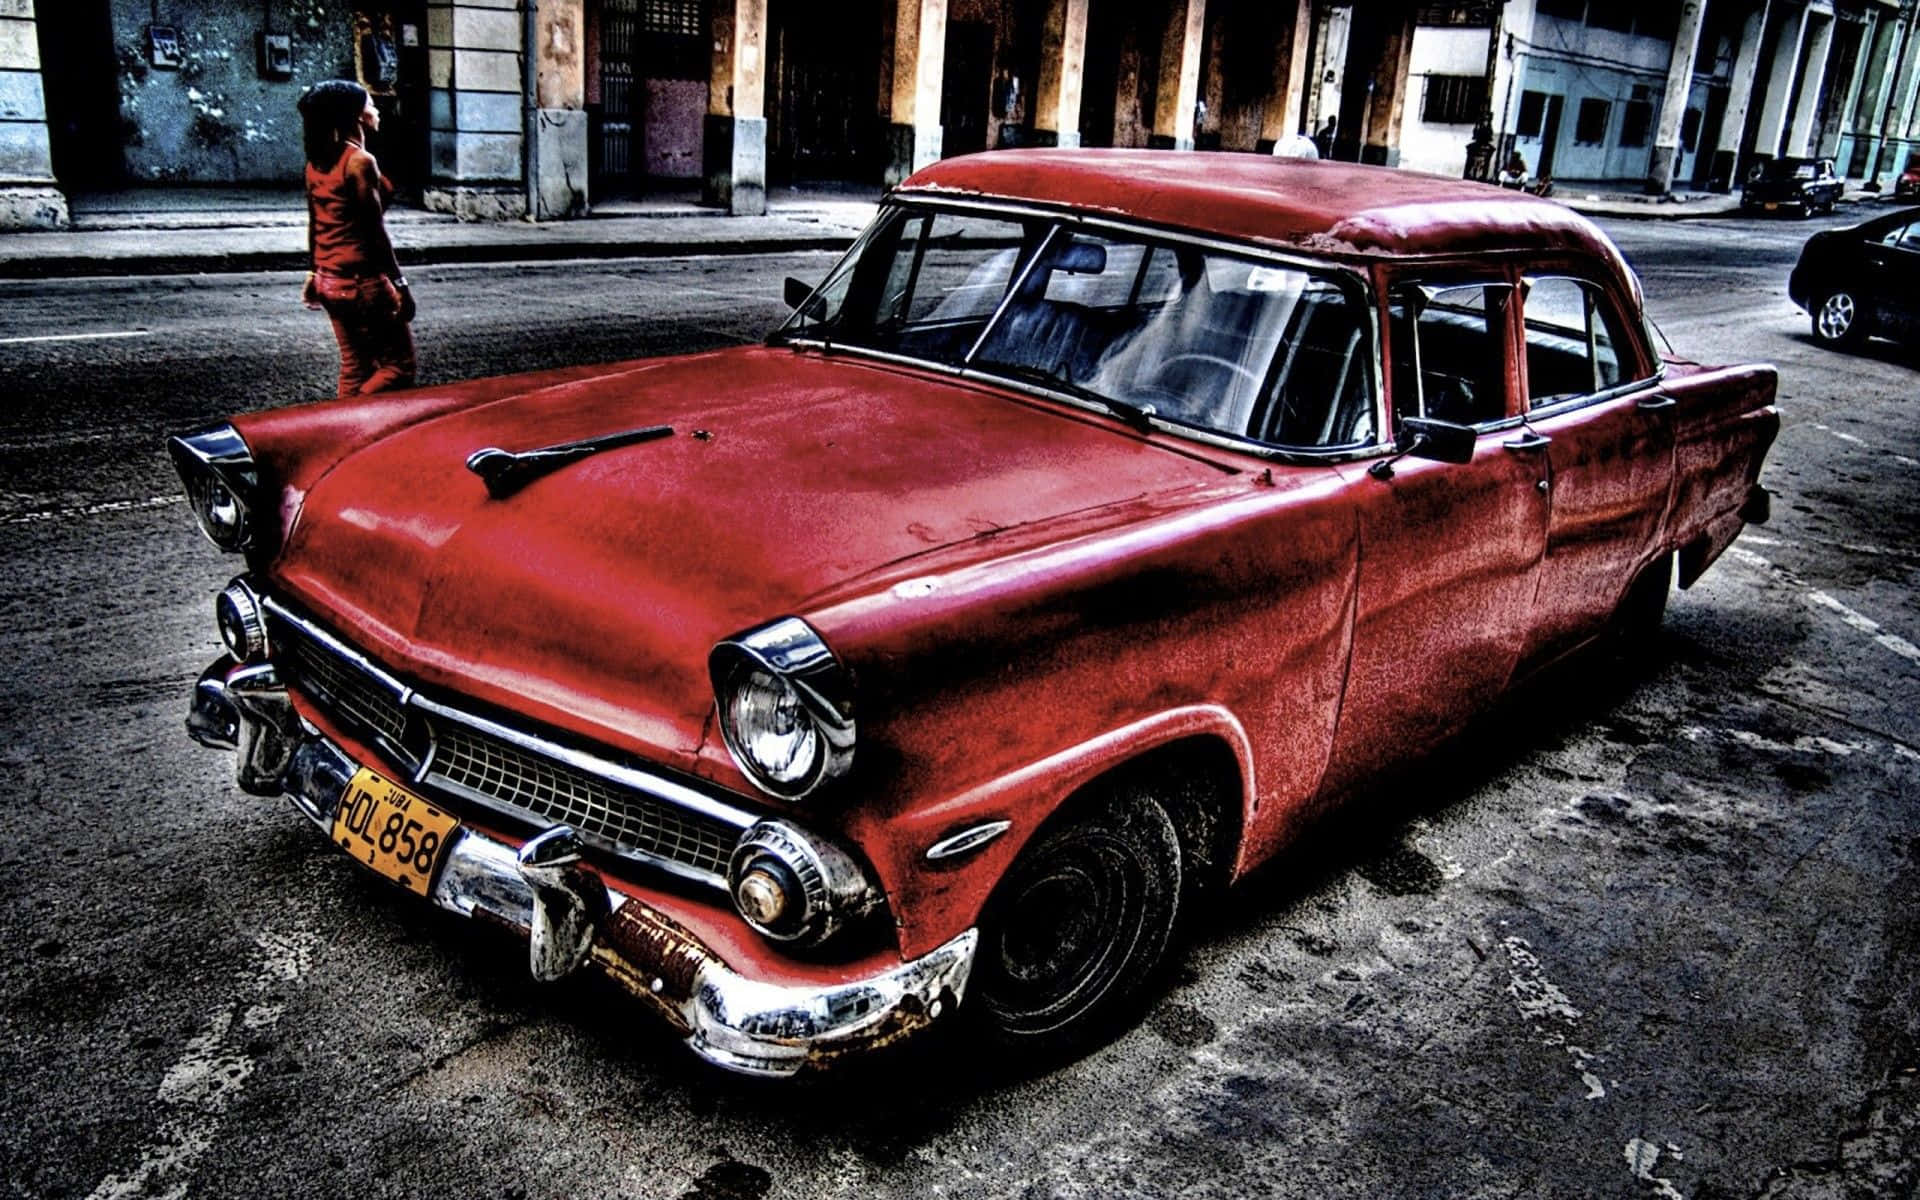 Umcarro Vermelho Está Estacionado Na Rua Em Cuba. Papel de Parede